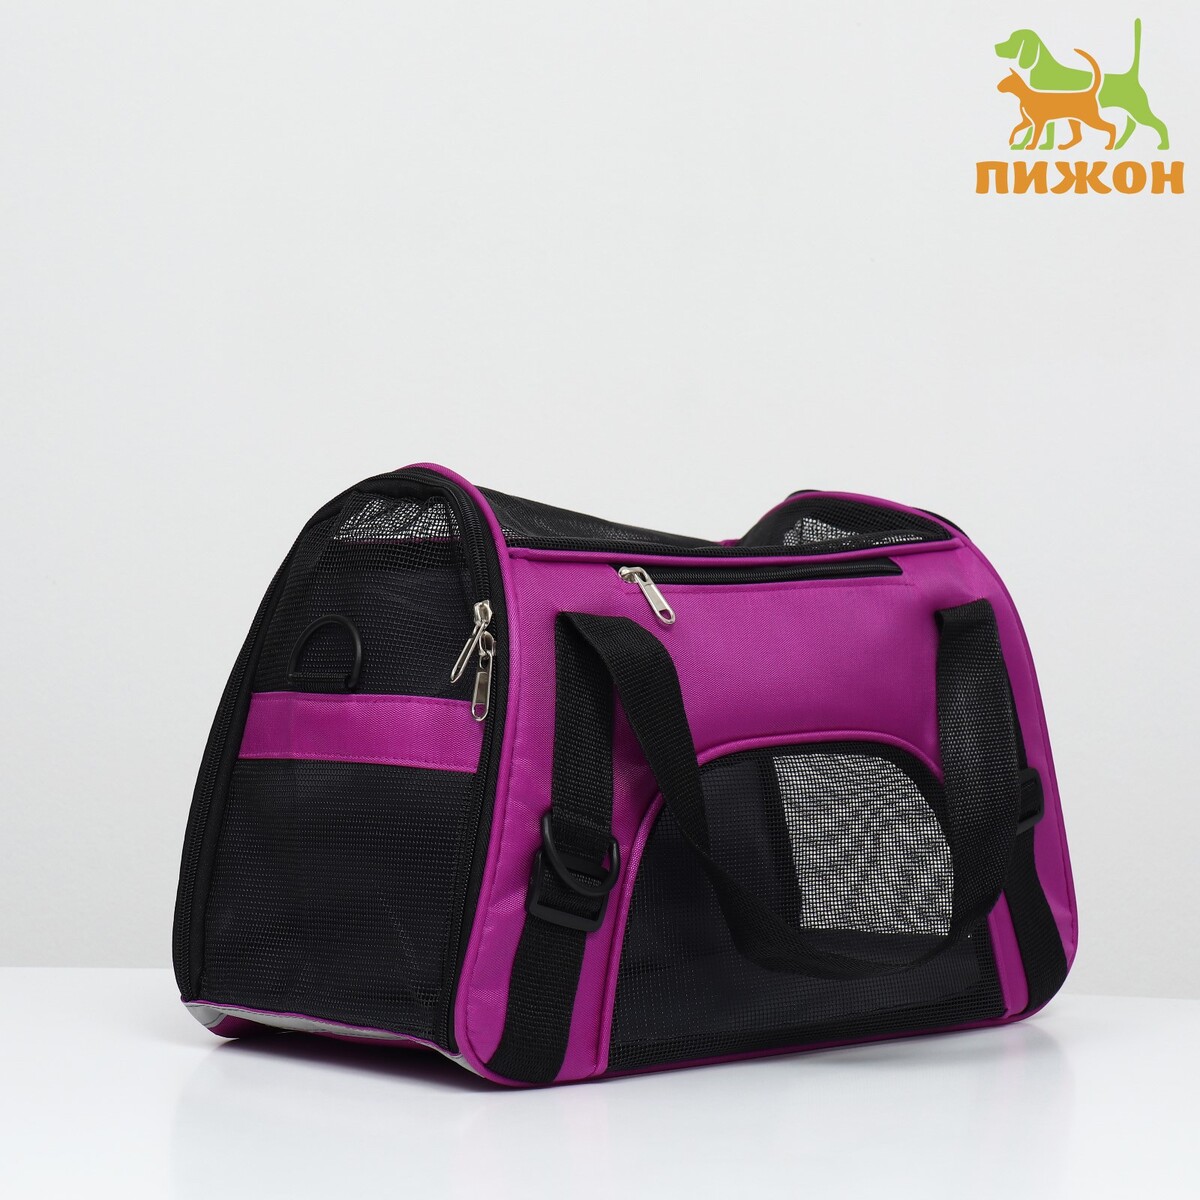 Сумка-переноска сетчатая, 43 х 21 х 30 см, фиолетовая сумка переноска для животных оксфорд 39 х 19 х 27 см фиолетовая